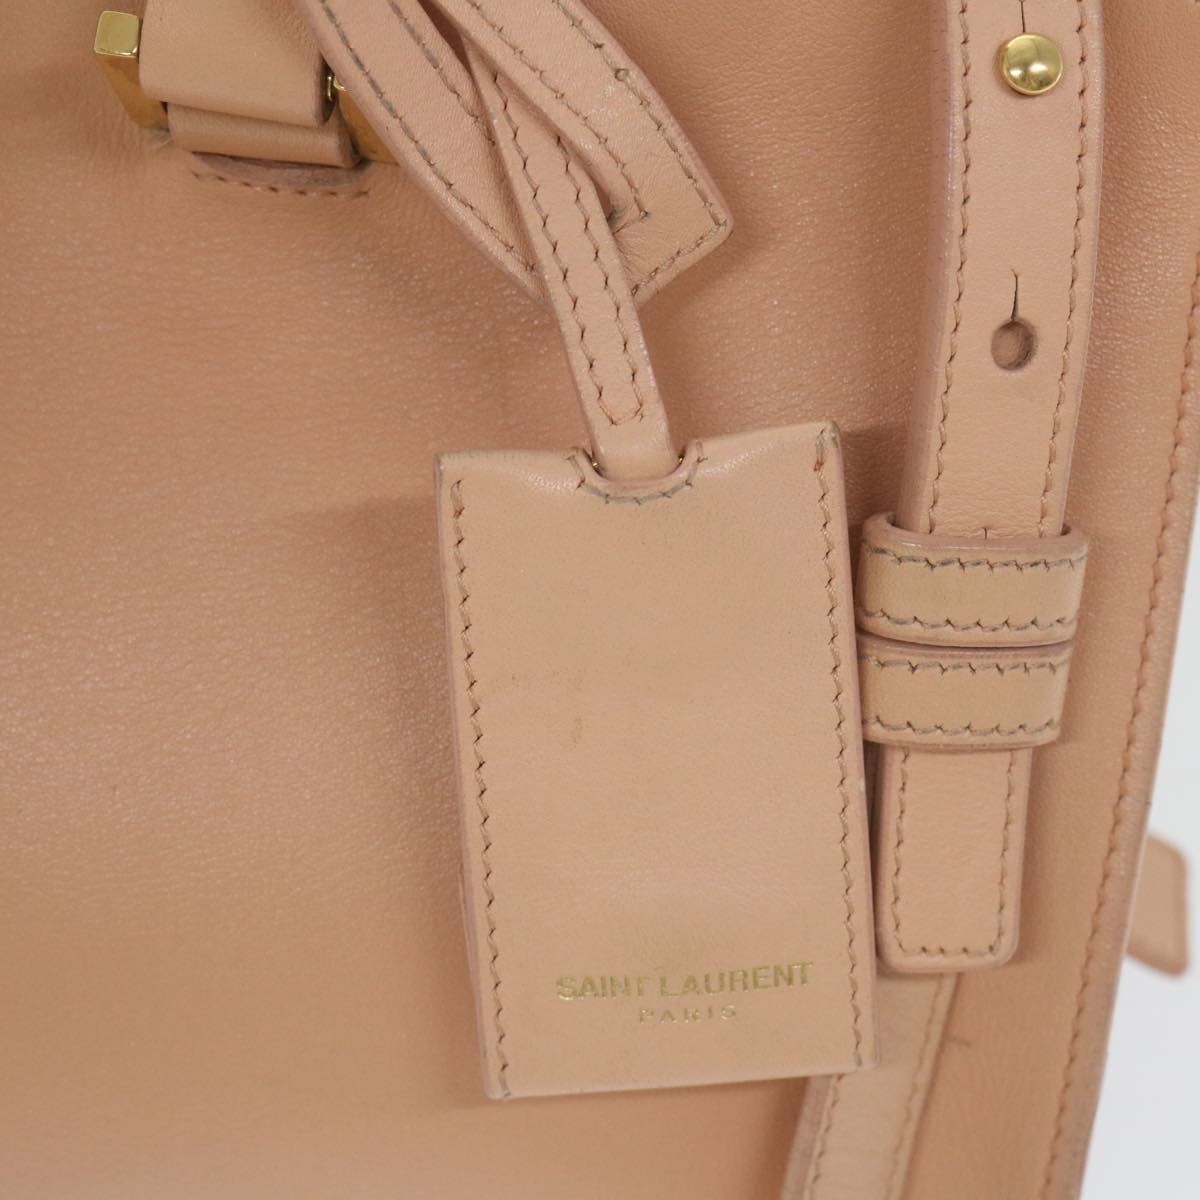 SAINT LAURENT Shoulder Bag Leather 2way Beige PMR311210 1013 Auth bs10152